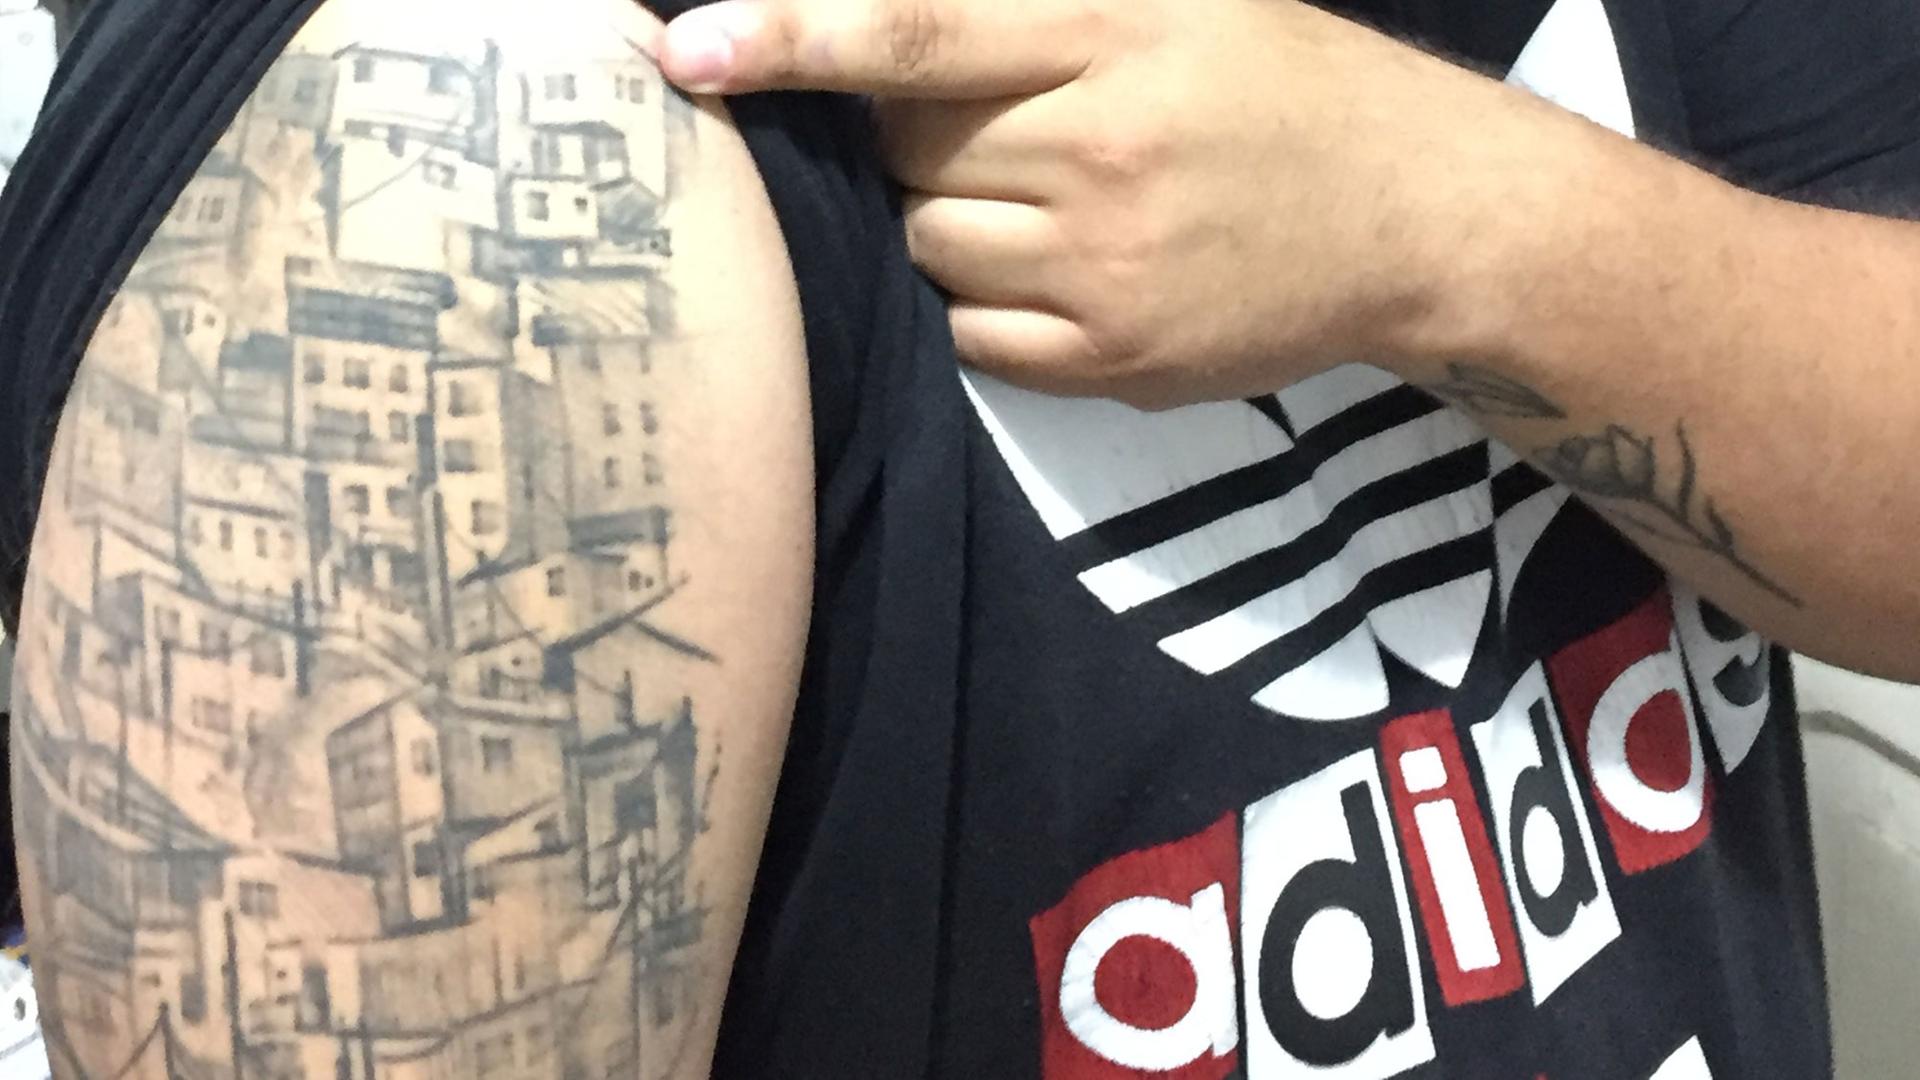 Der Rapper Jeihhco hat sich ein Bild seines Viertels auf dem Oberarm tätowieren lassen